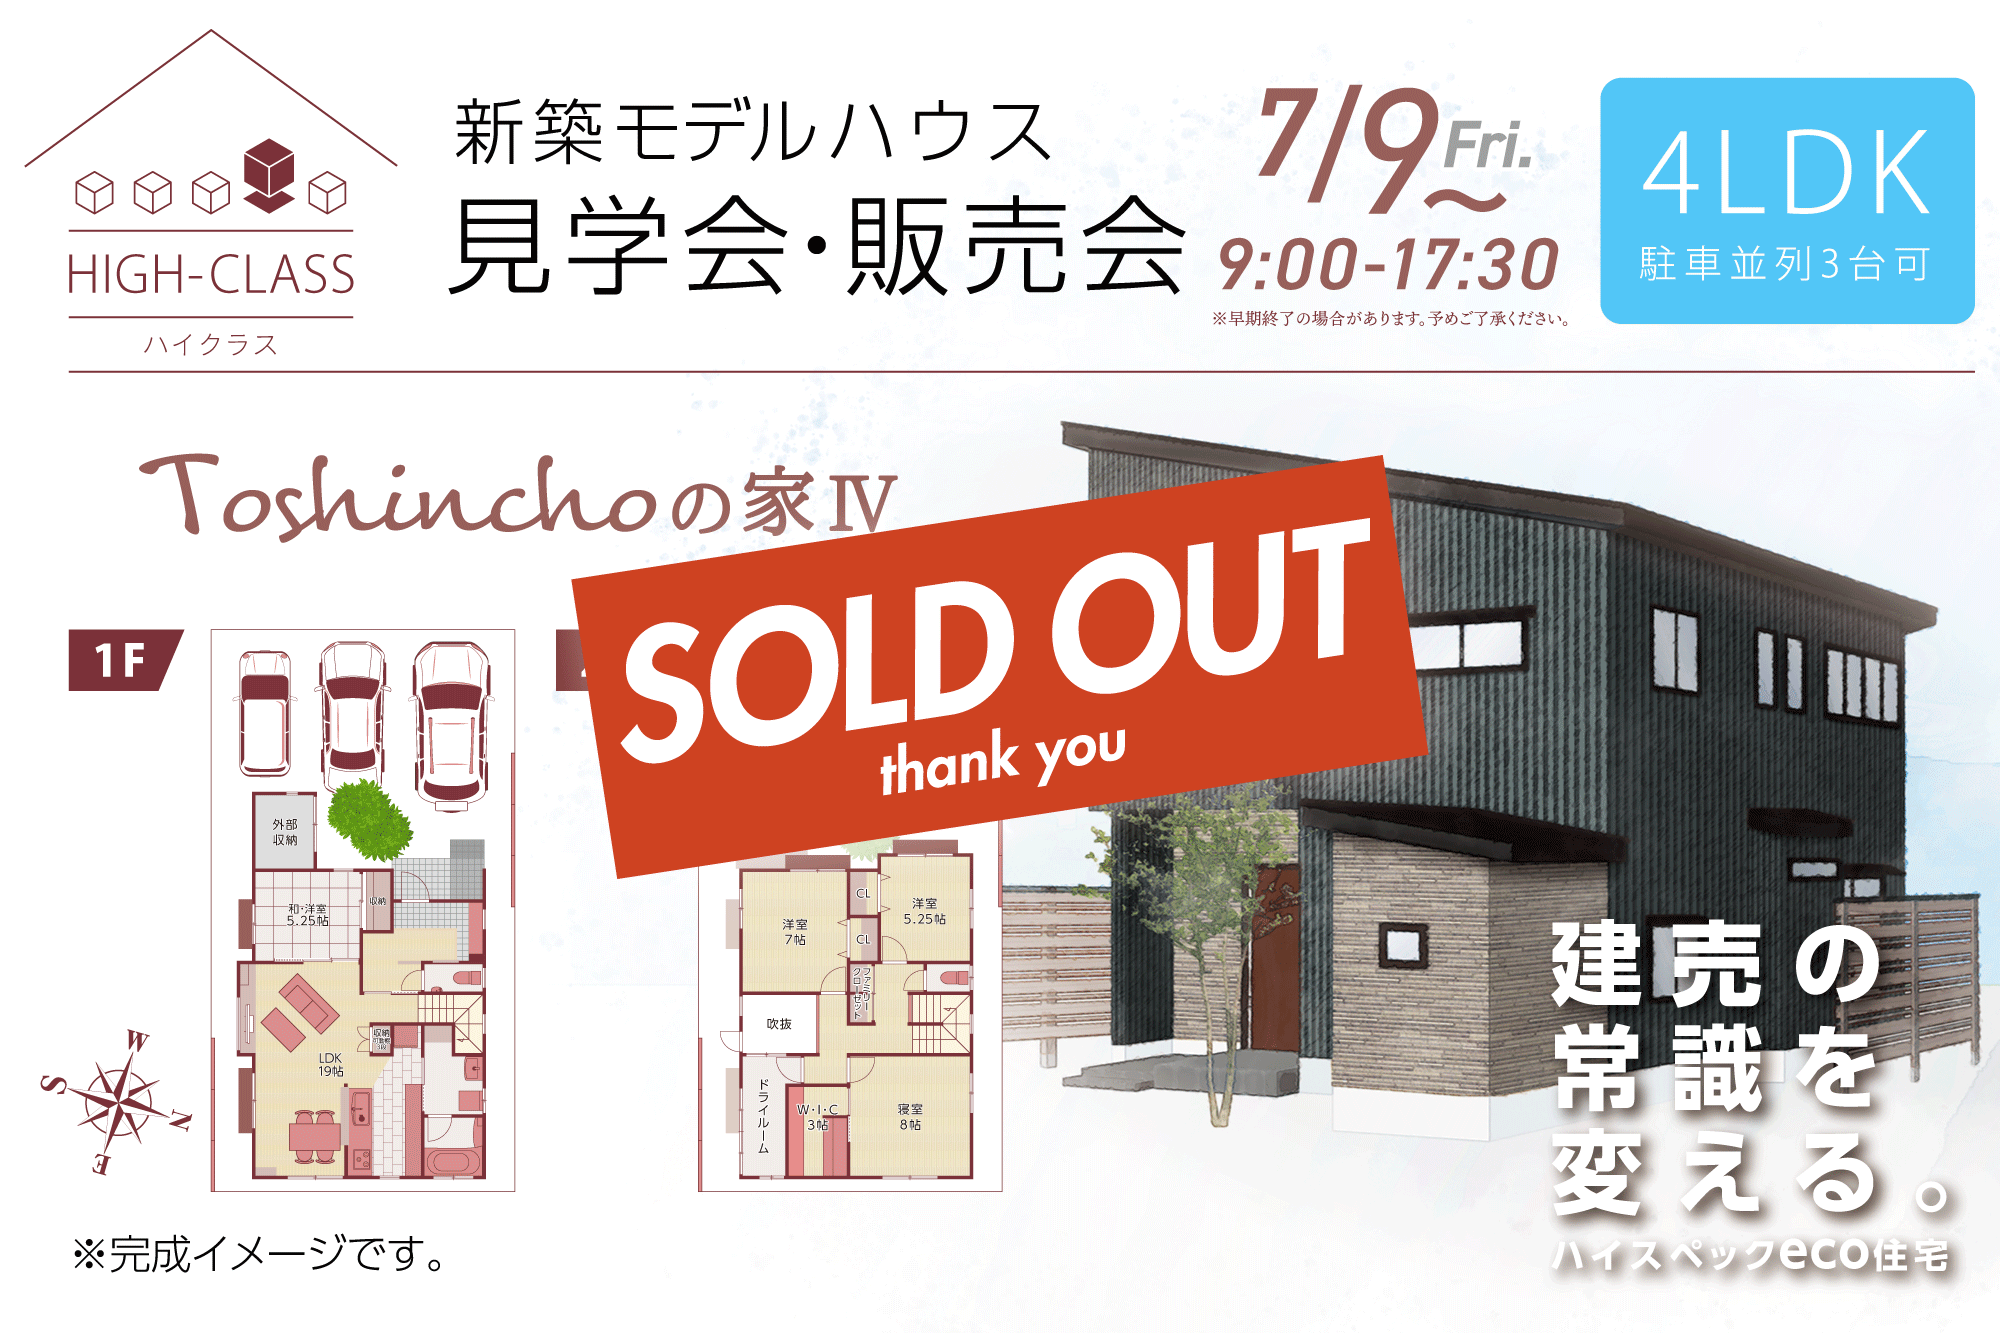 東新町1丁目Toshinchoの家Ⅳ【SOLD OUT】thank you